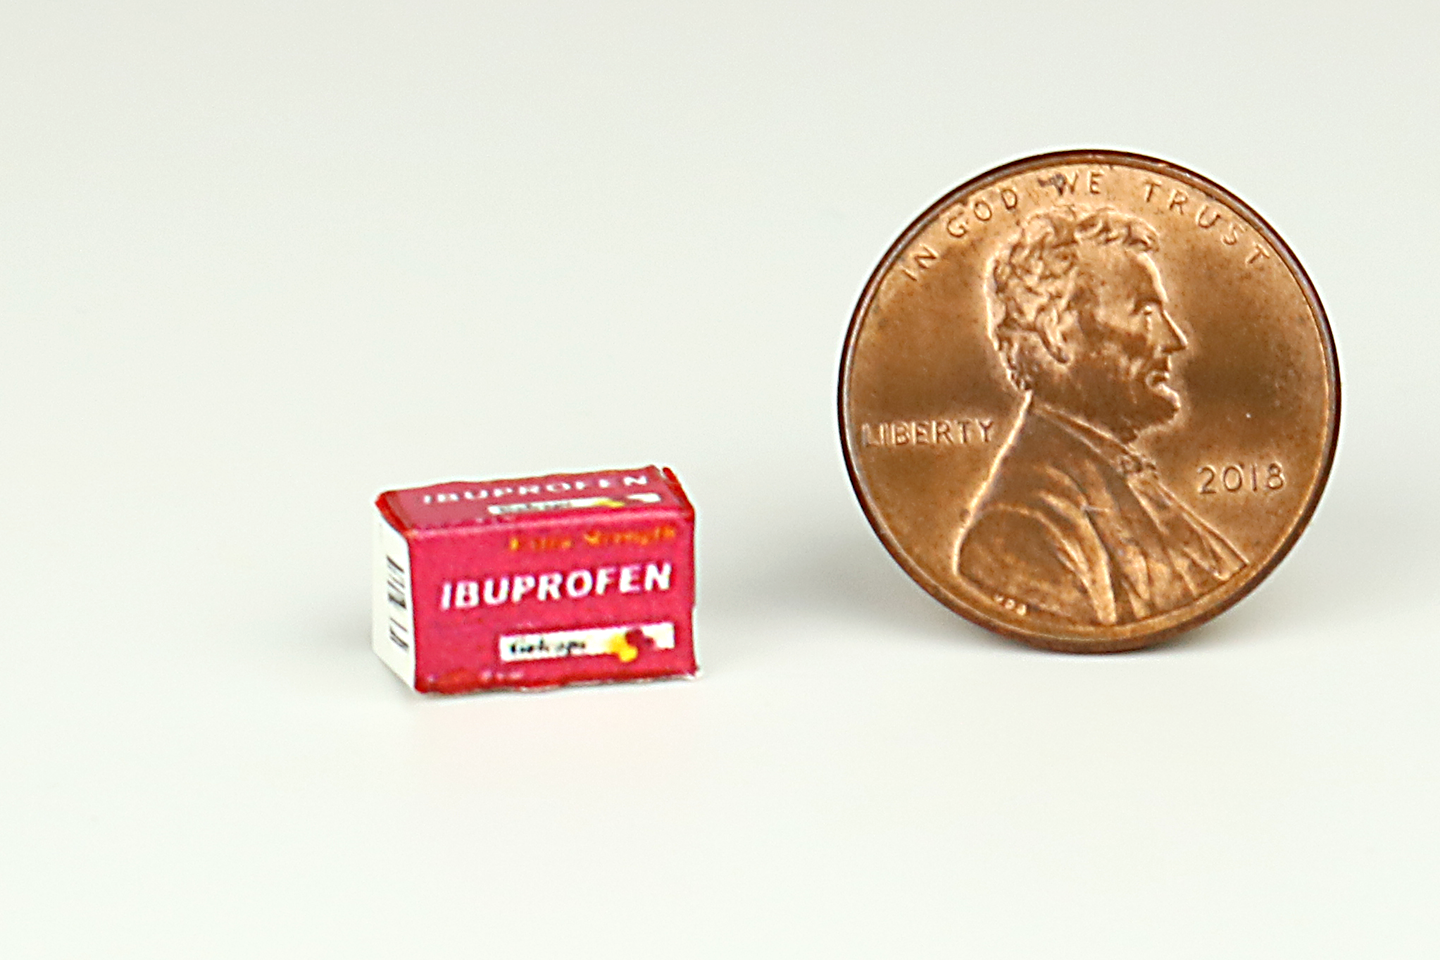 Box of Ibuprofen